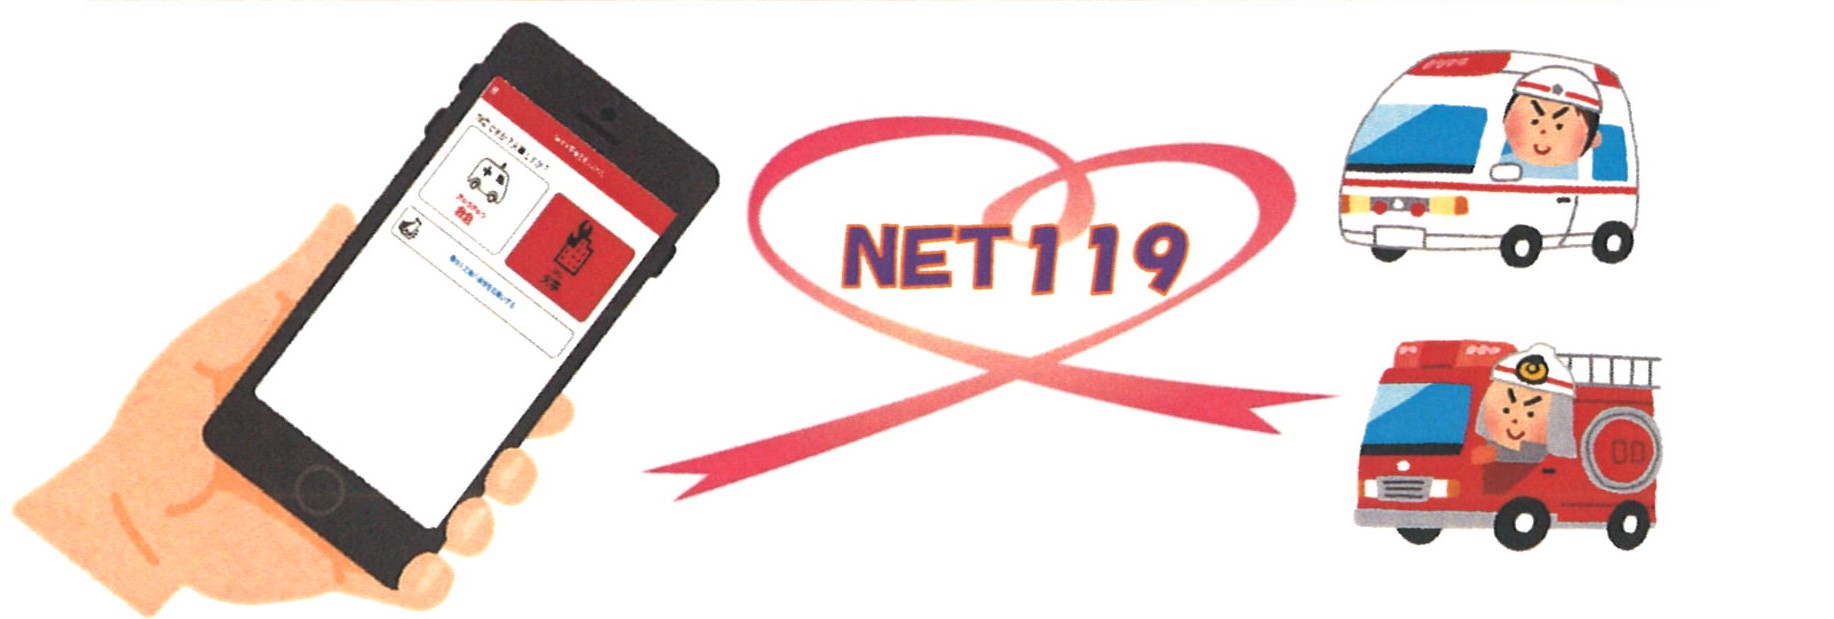 Net119